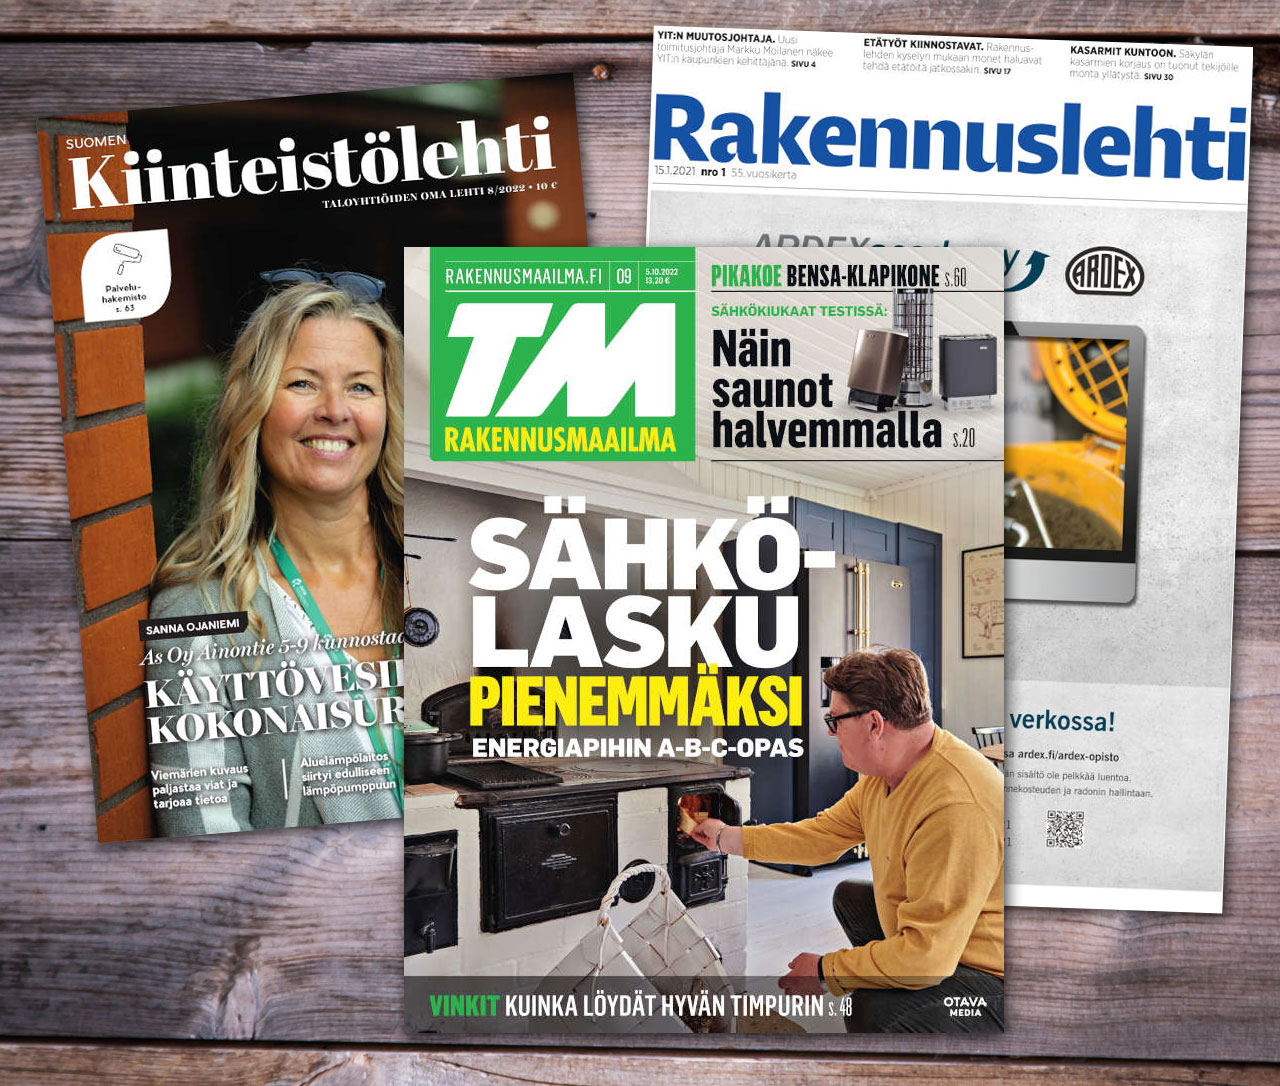 Suomalaisia rakennuslehtiä ovat mm. Kiinteistölehti, TM Rakennusmaailma ja Rakennuslehti.